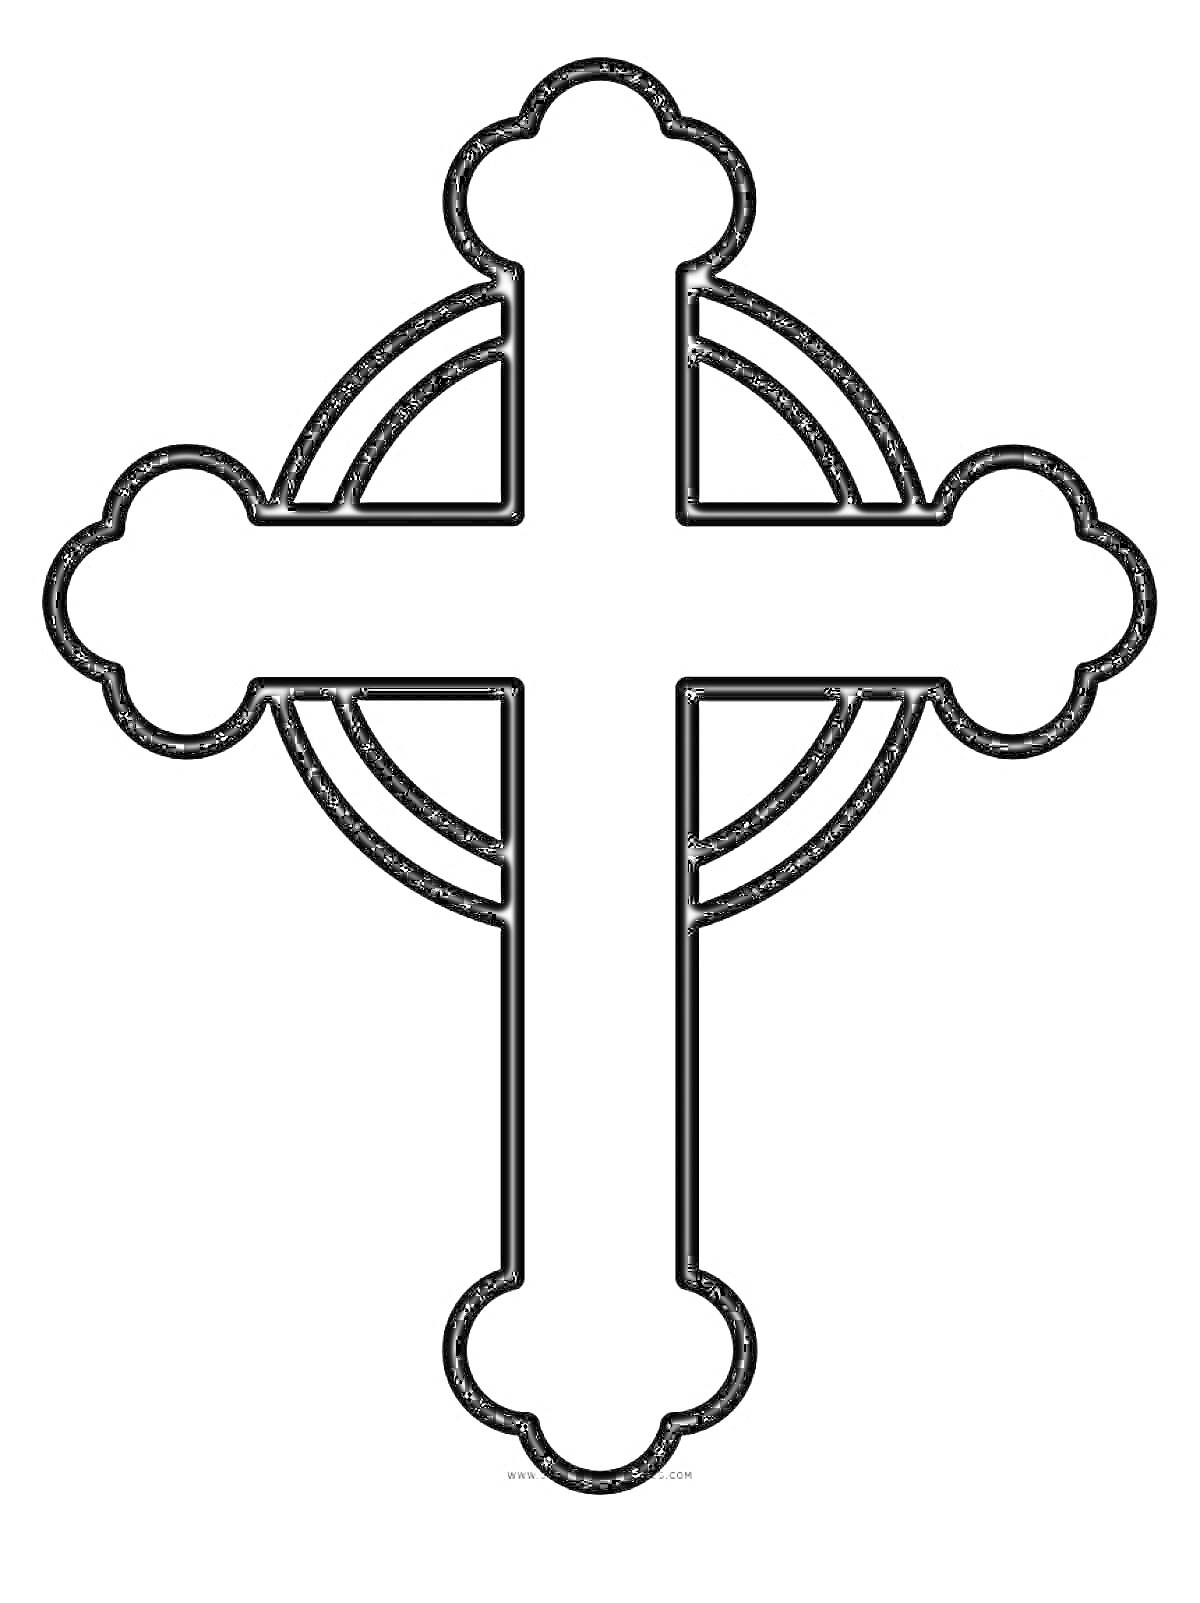 Раскраска крест с округлыми концами и окружностью вокруг